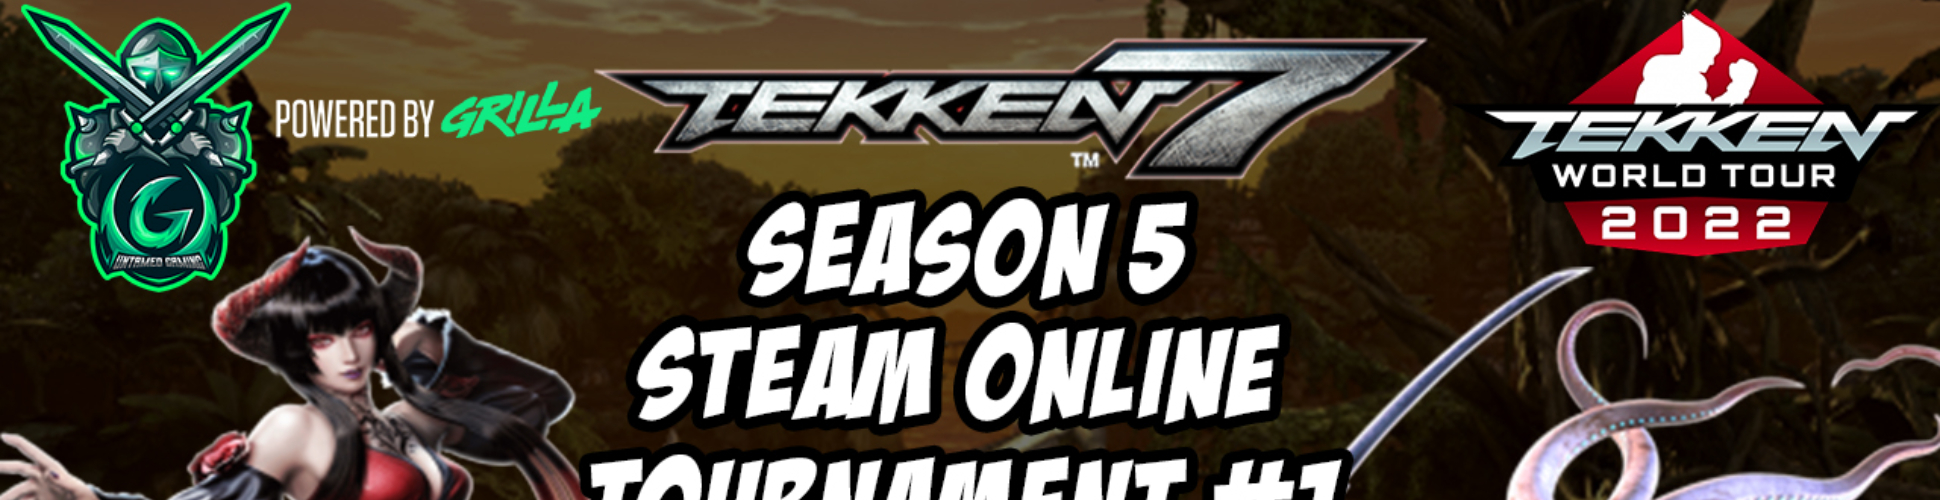 Tekken 7 Season 5 Steam Online Tournament #1 9/25/22 8pm EST